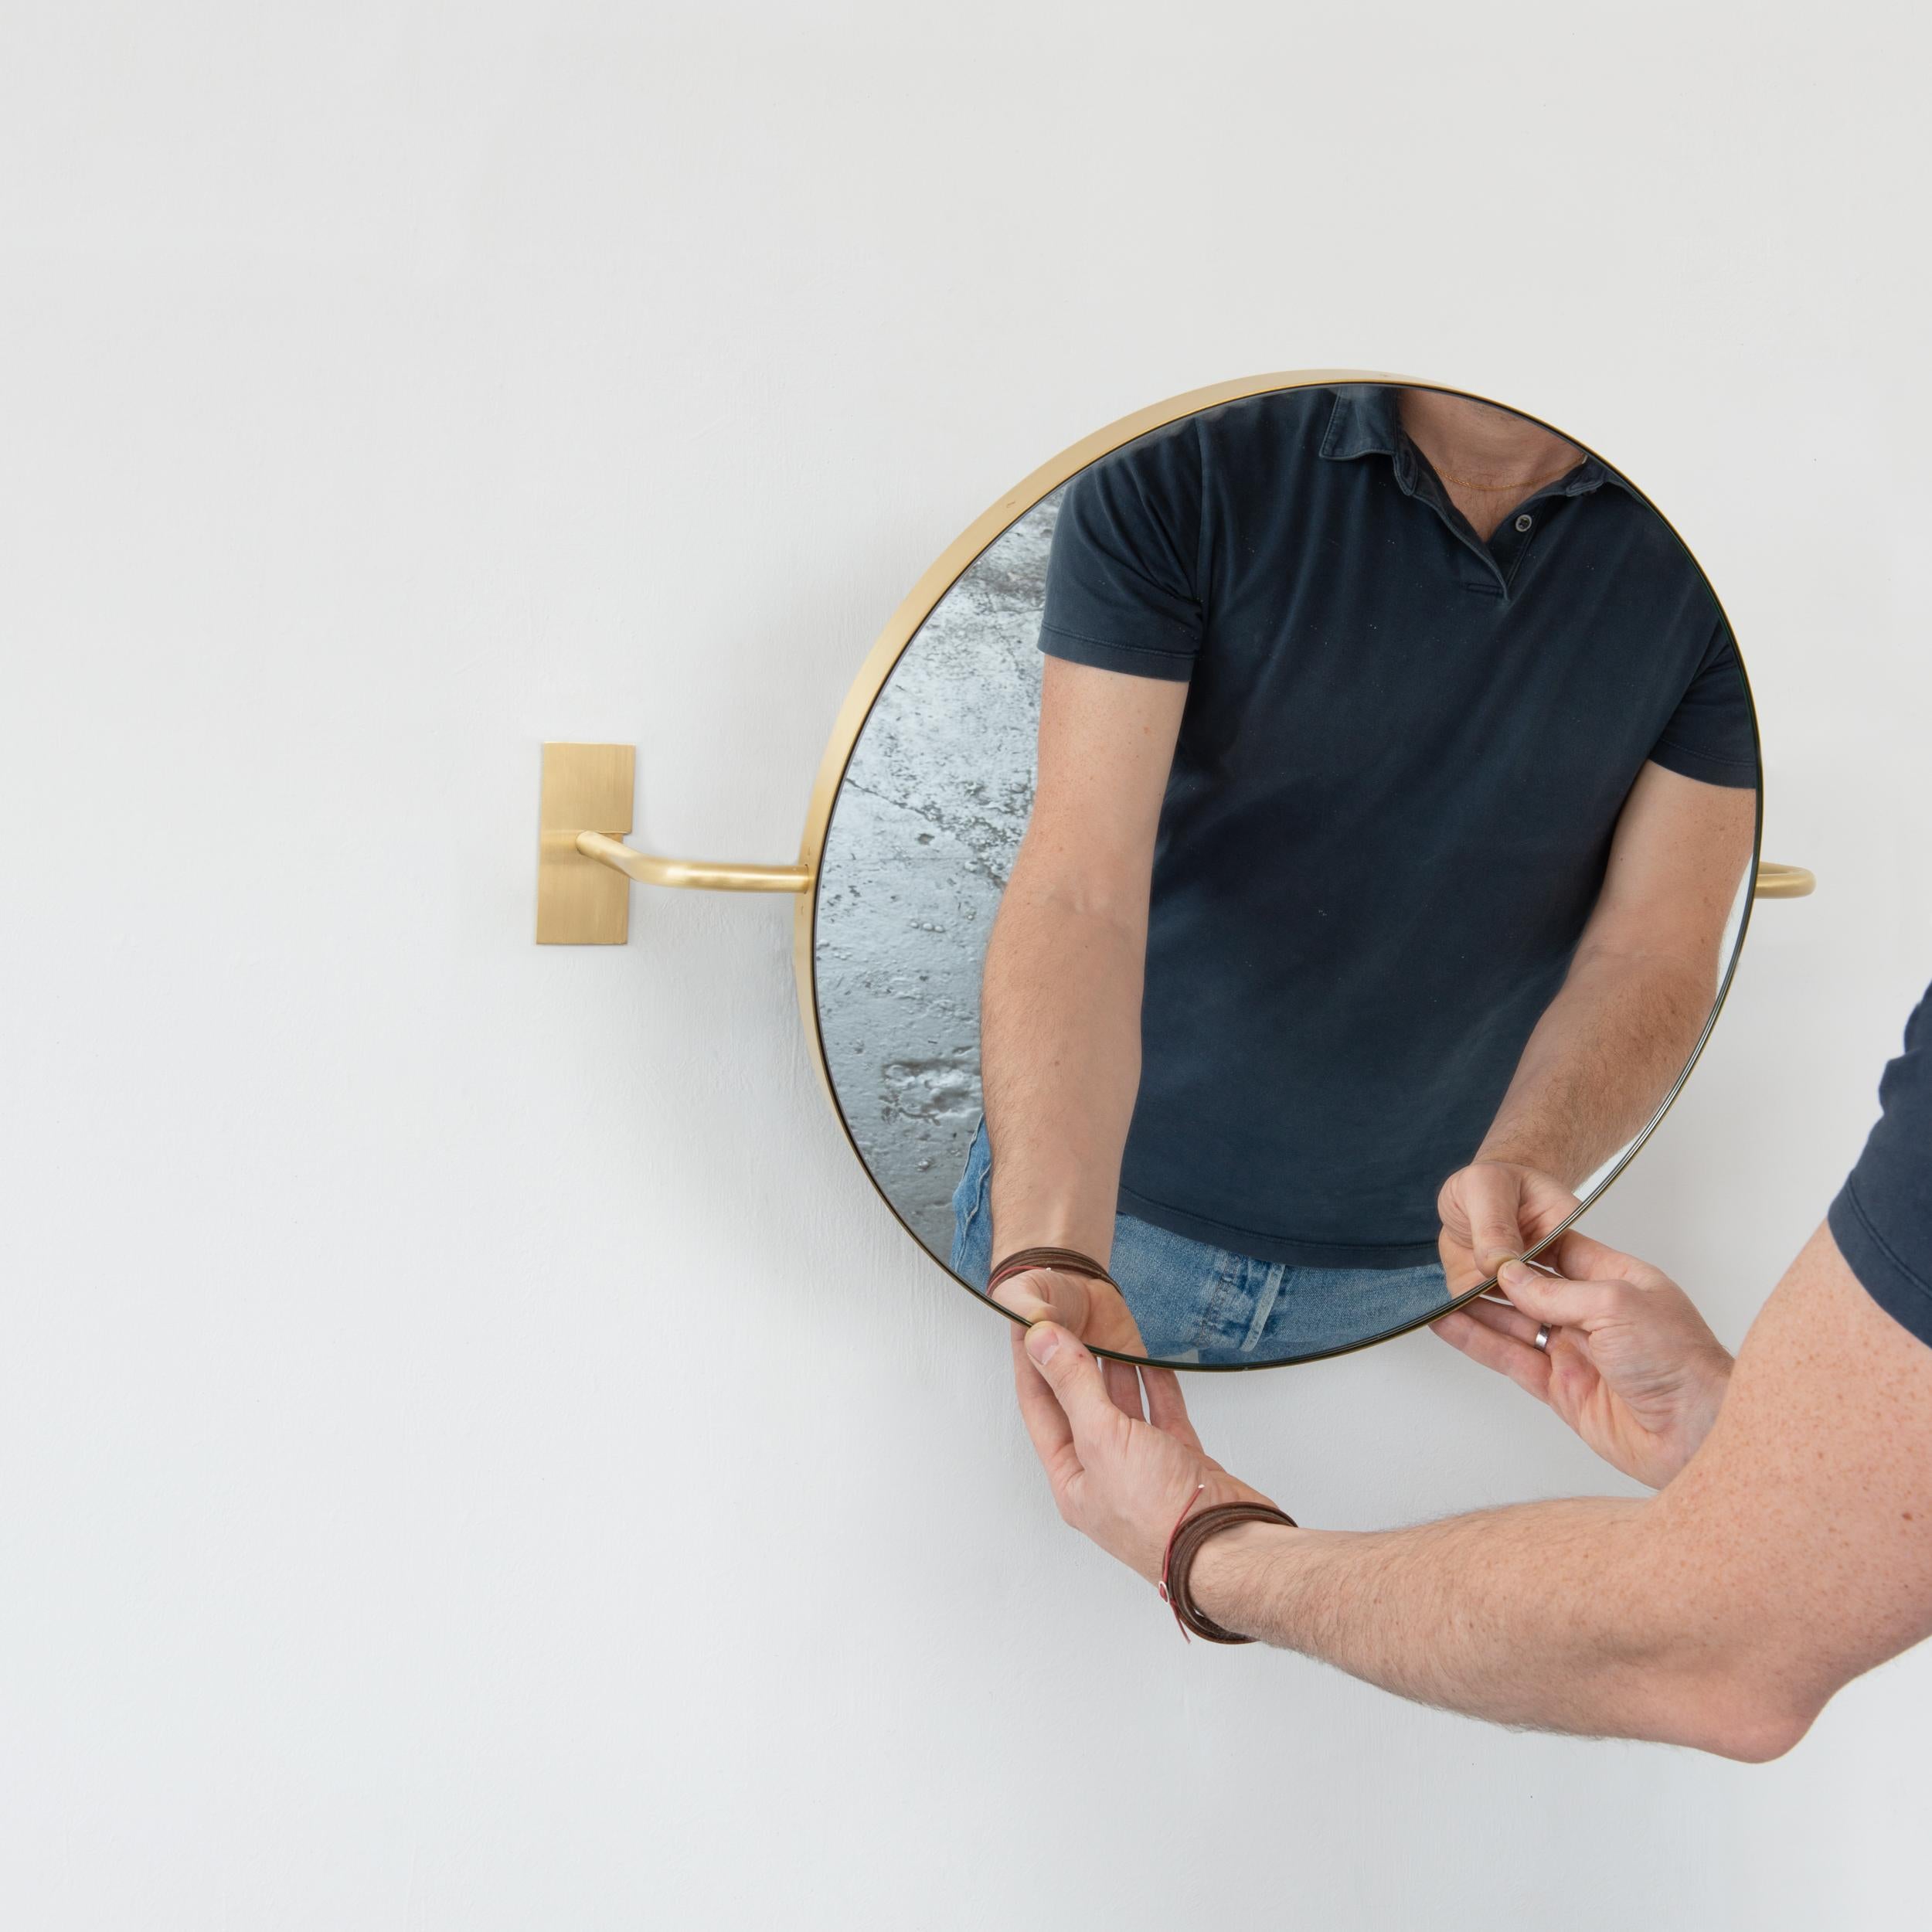 Unser brandneuer Vorso™-Spiegel, der in London entworfen und handgefertigt wird, ist eine geniale, originelle und elegante Ergänzung unseres flexiblen Angebots an Lösungen für Wandaufhängungen, Deckenaufhängungen und Anlehnspiegel.

Die beiden Arme